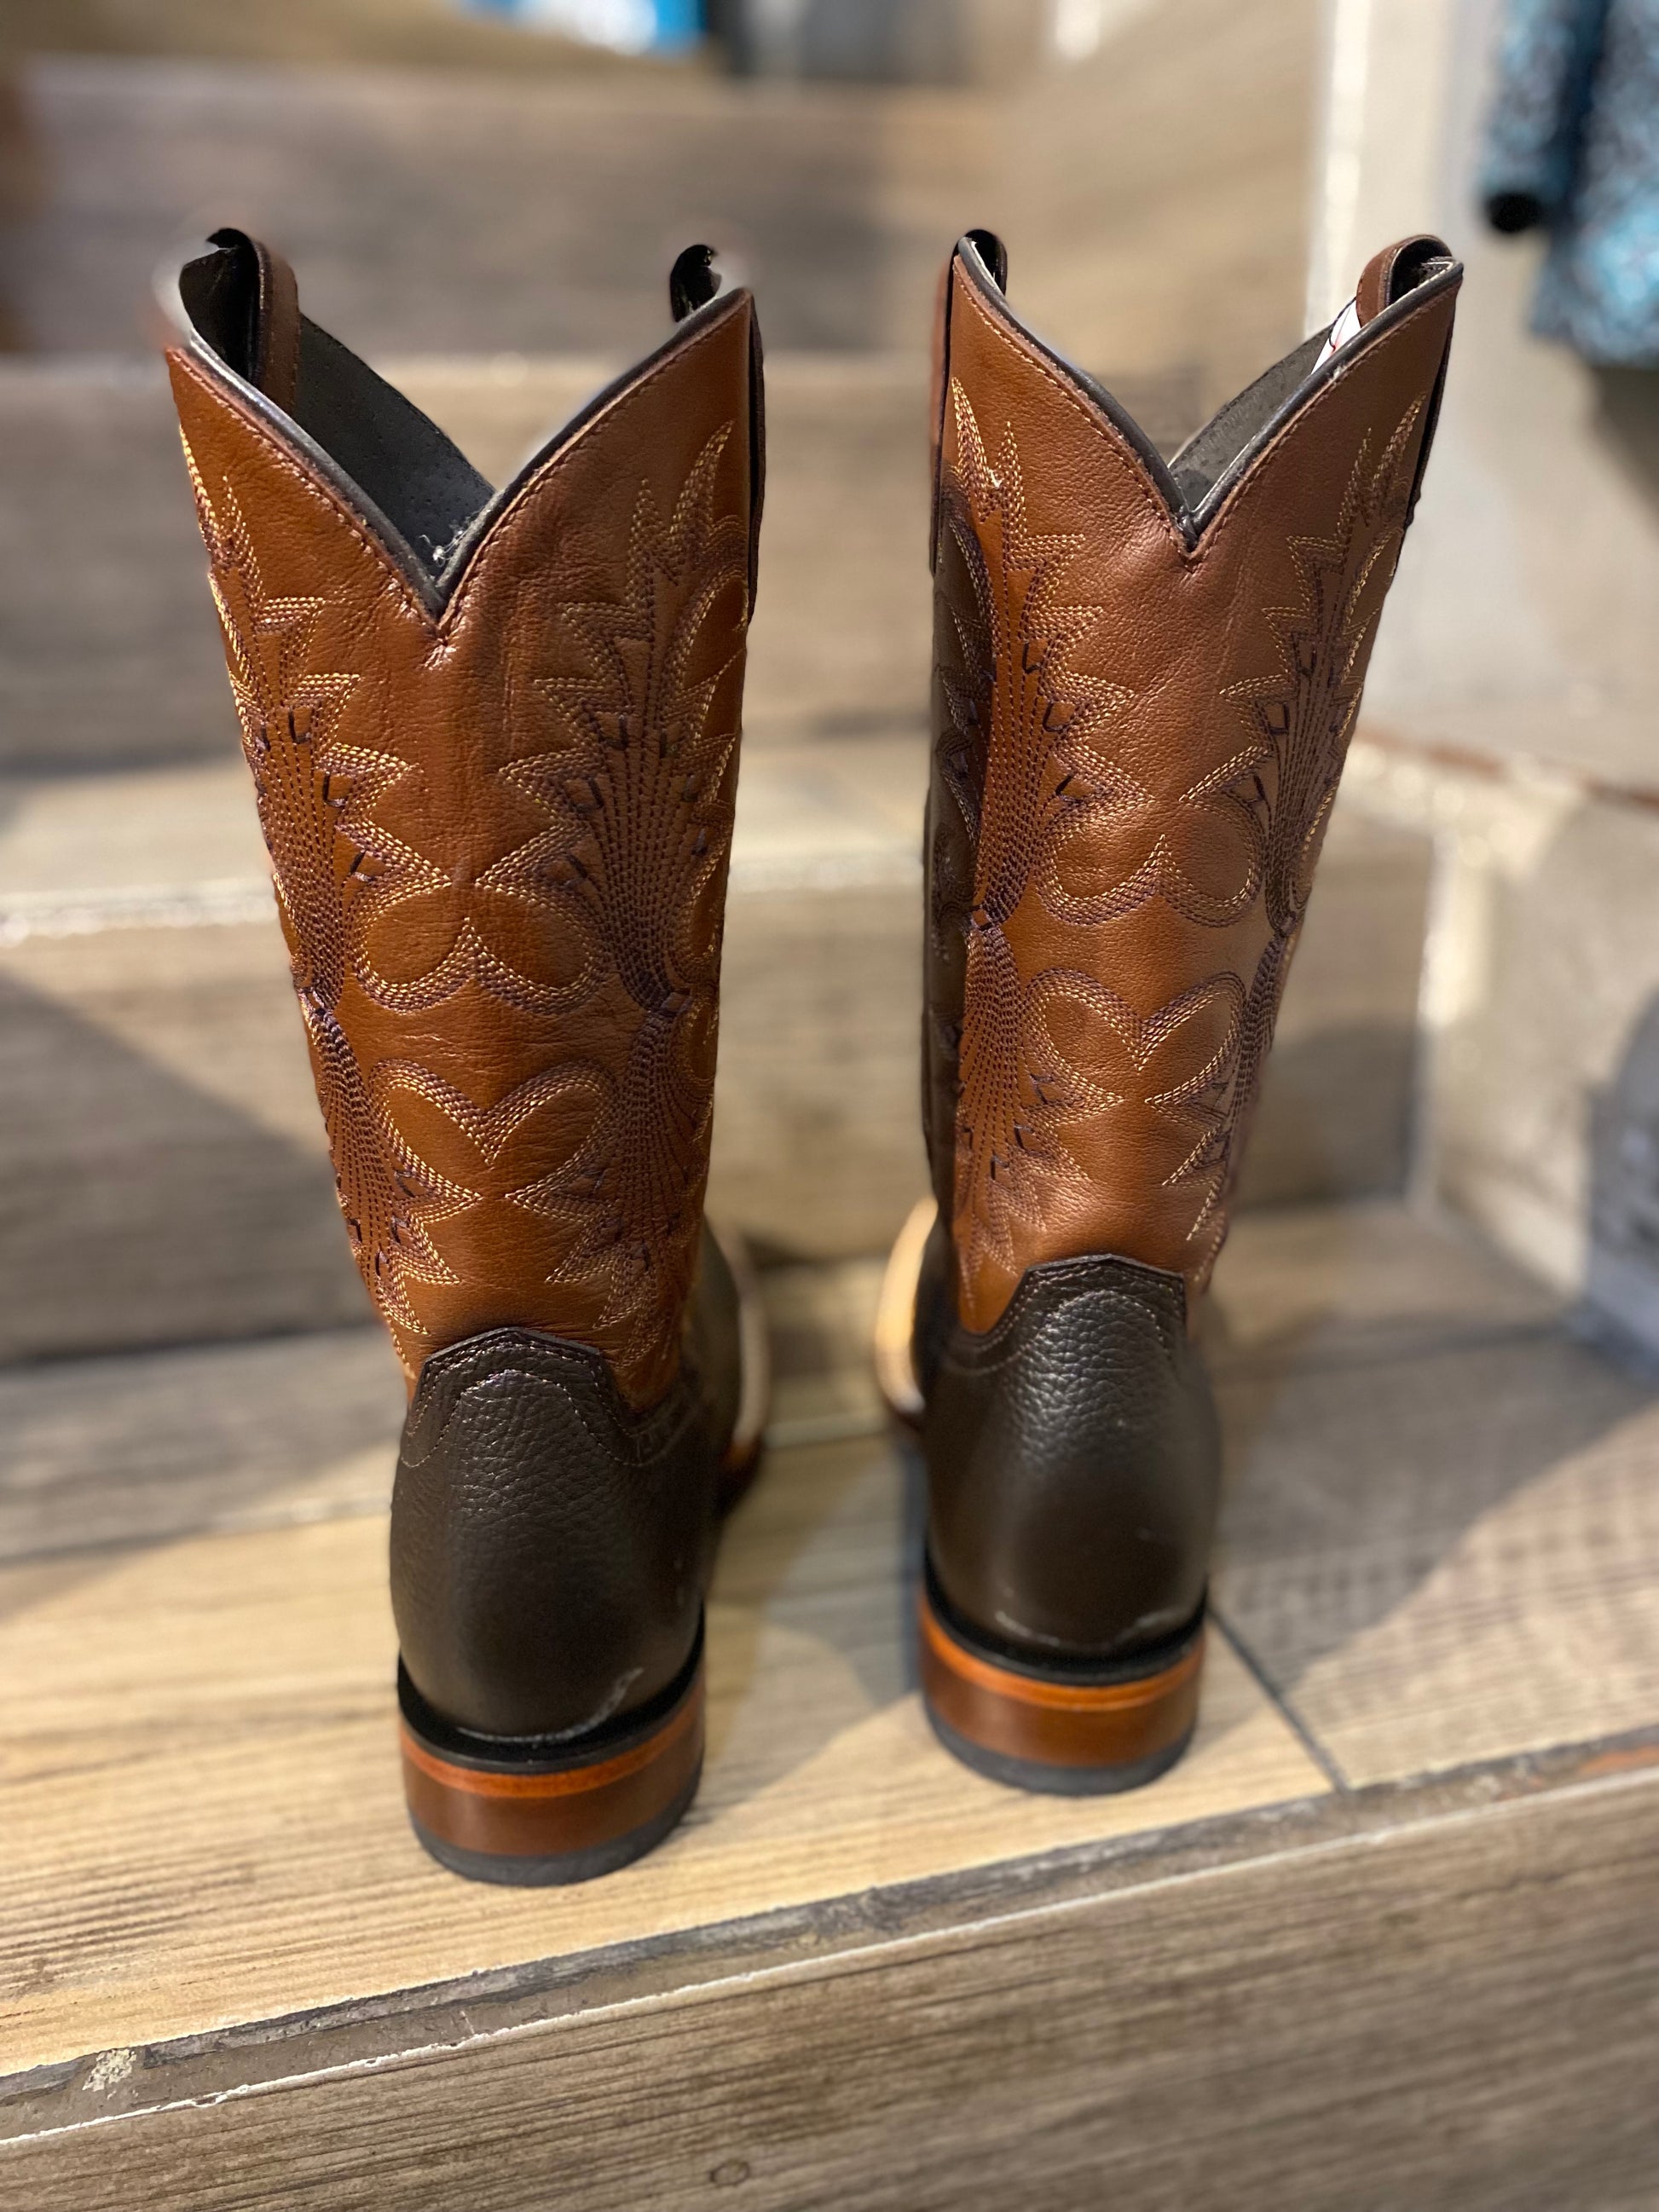 Bota Justin Boots Texas Choco La Casa del Vaquero